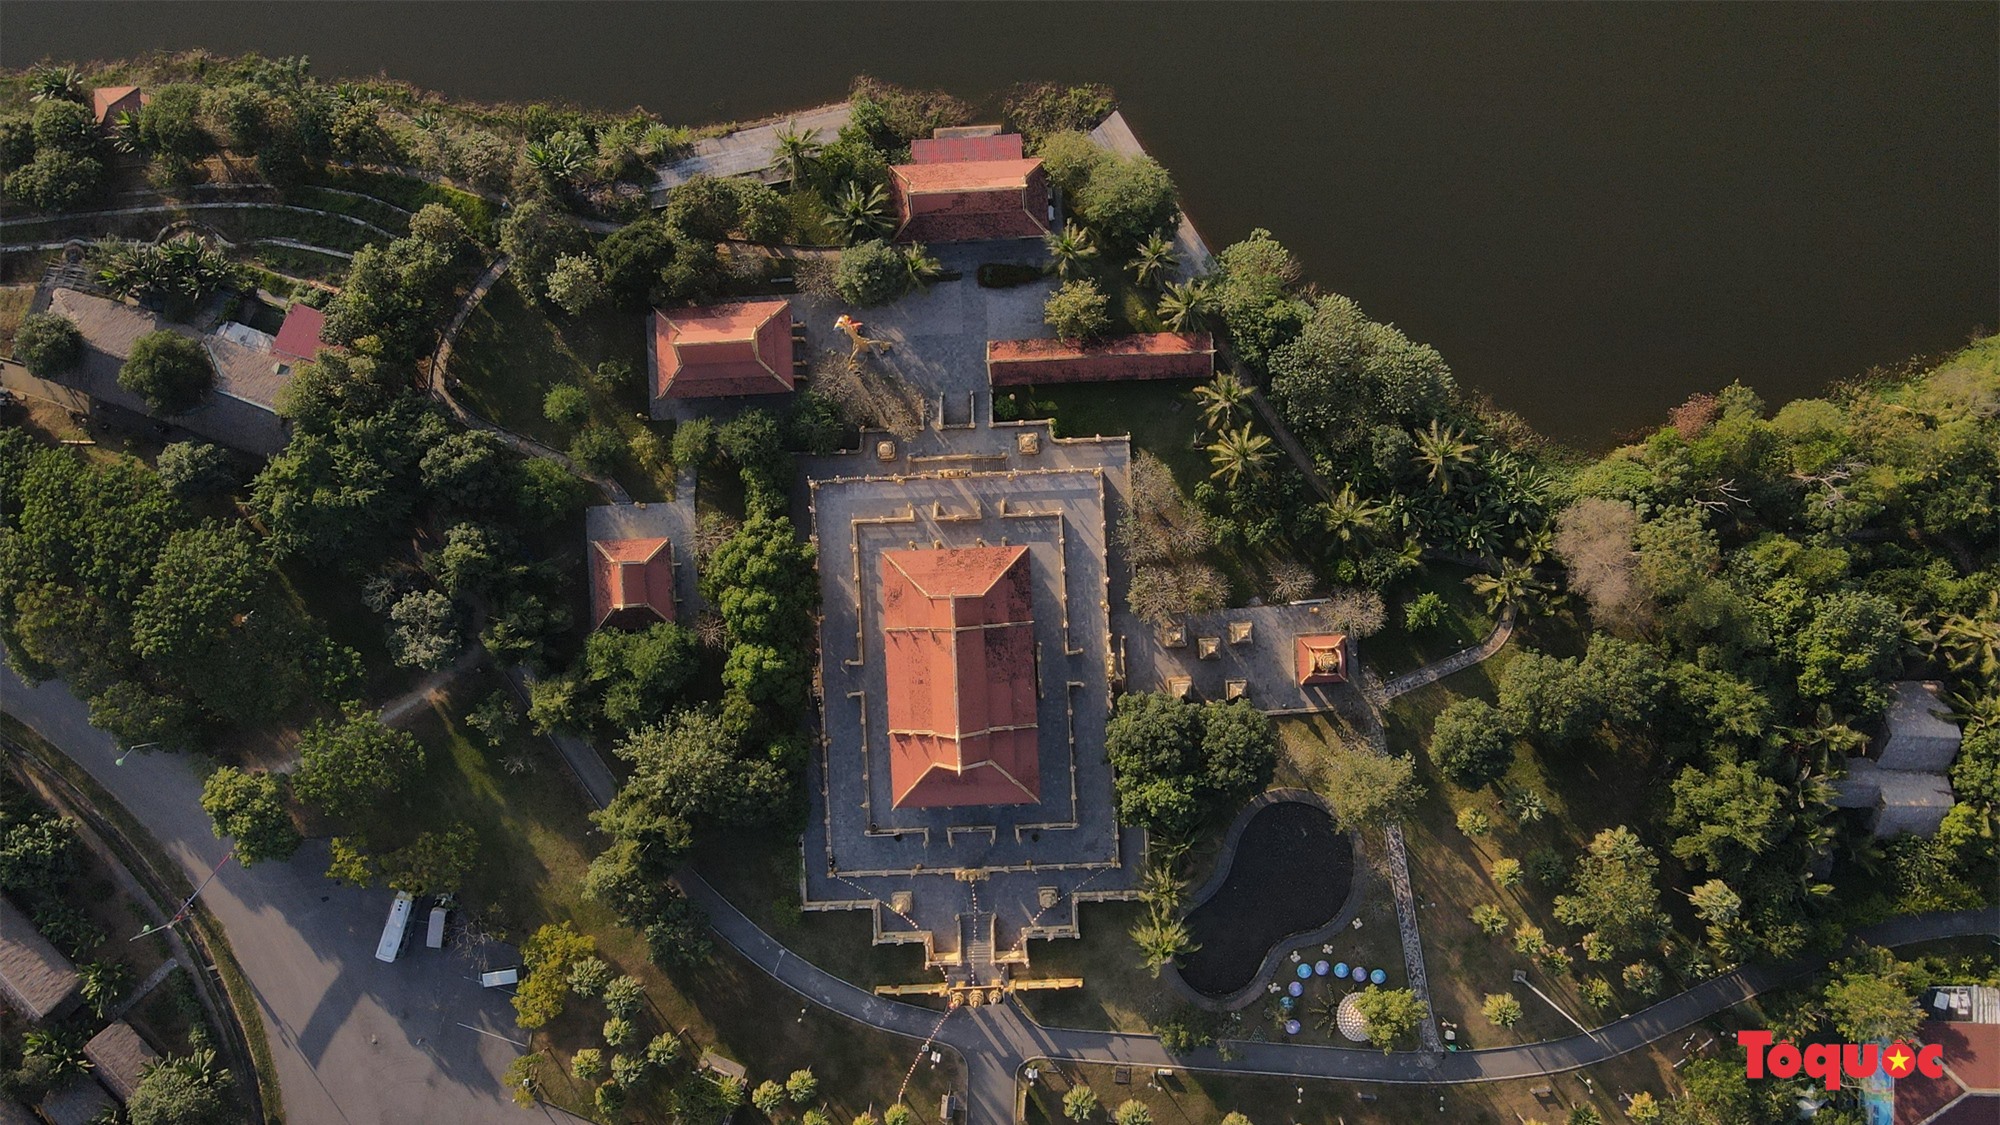 Khám phá kiến trúc chùa Khmer duy nhất ở Hà Nội - Ảnh 5.